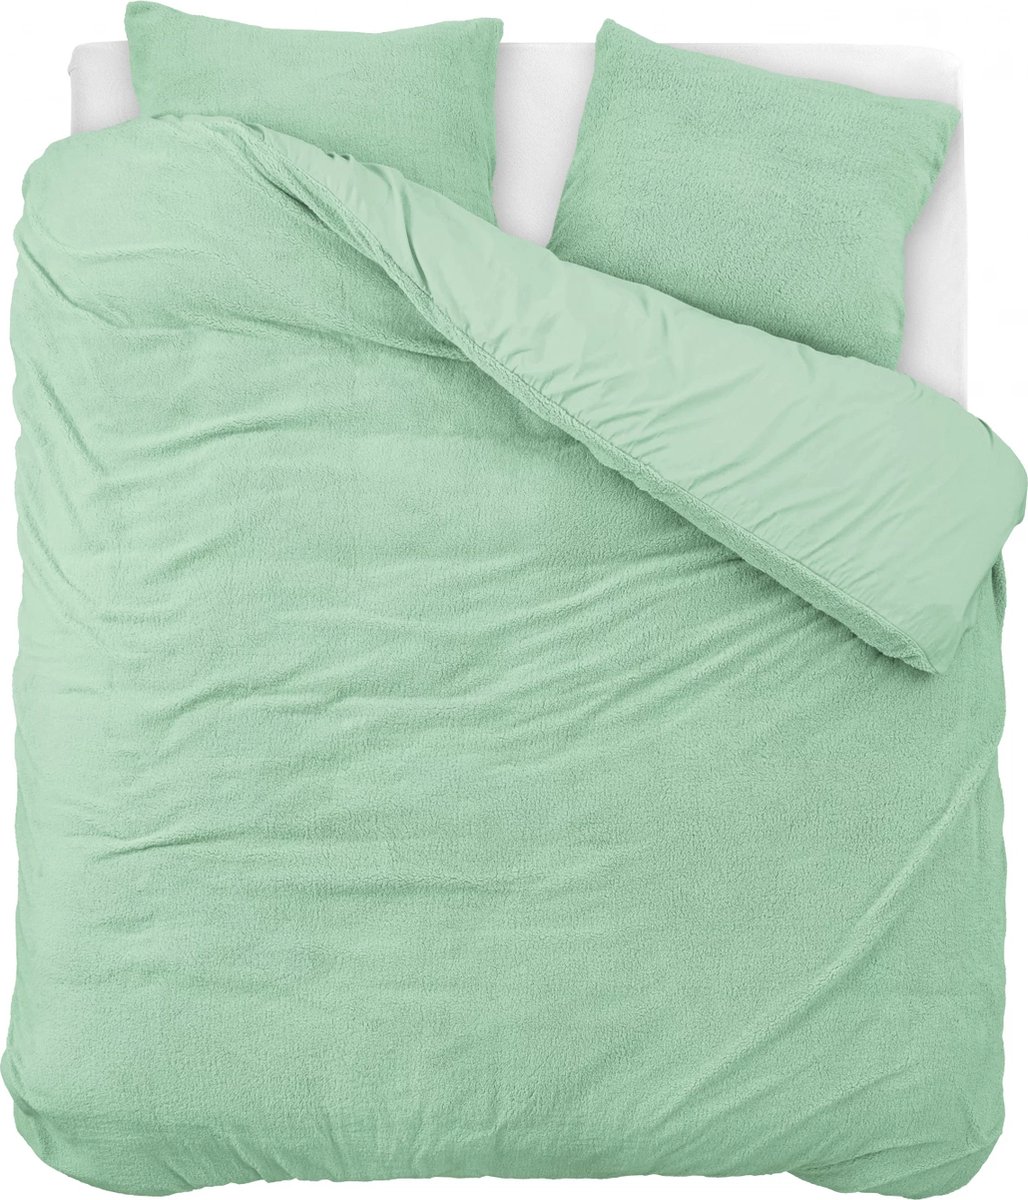 Superzachte teddystof dekbedovertrek uni groen - 240x200/220 (lits-jumeaux) - heerlijk slapen - cosy look - luxe kwaliteit - met handige drukknopen